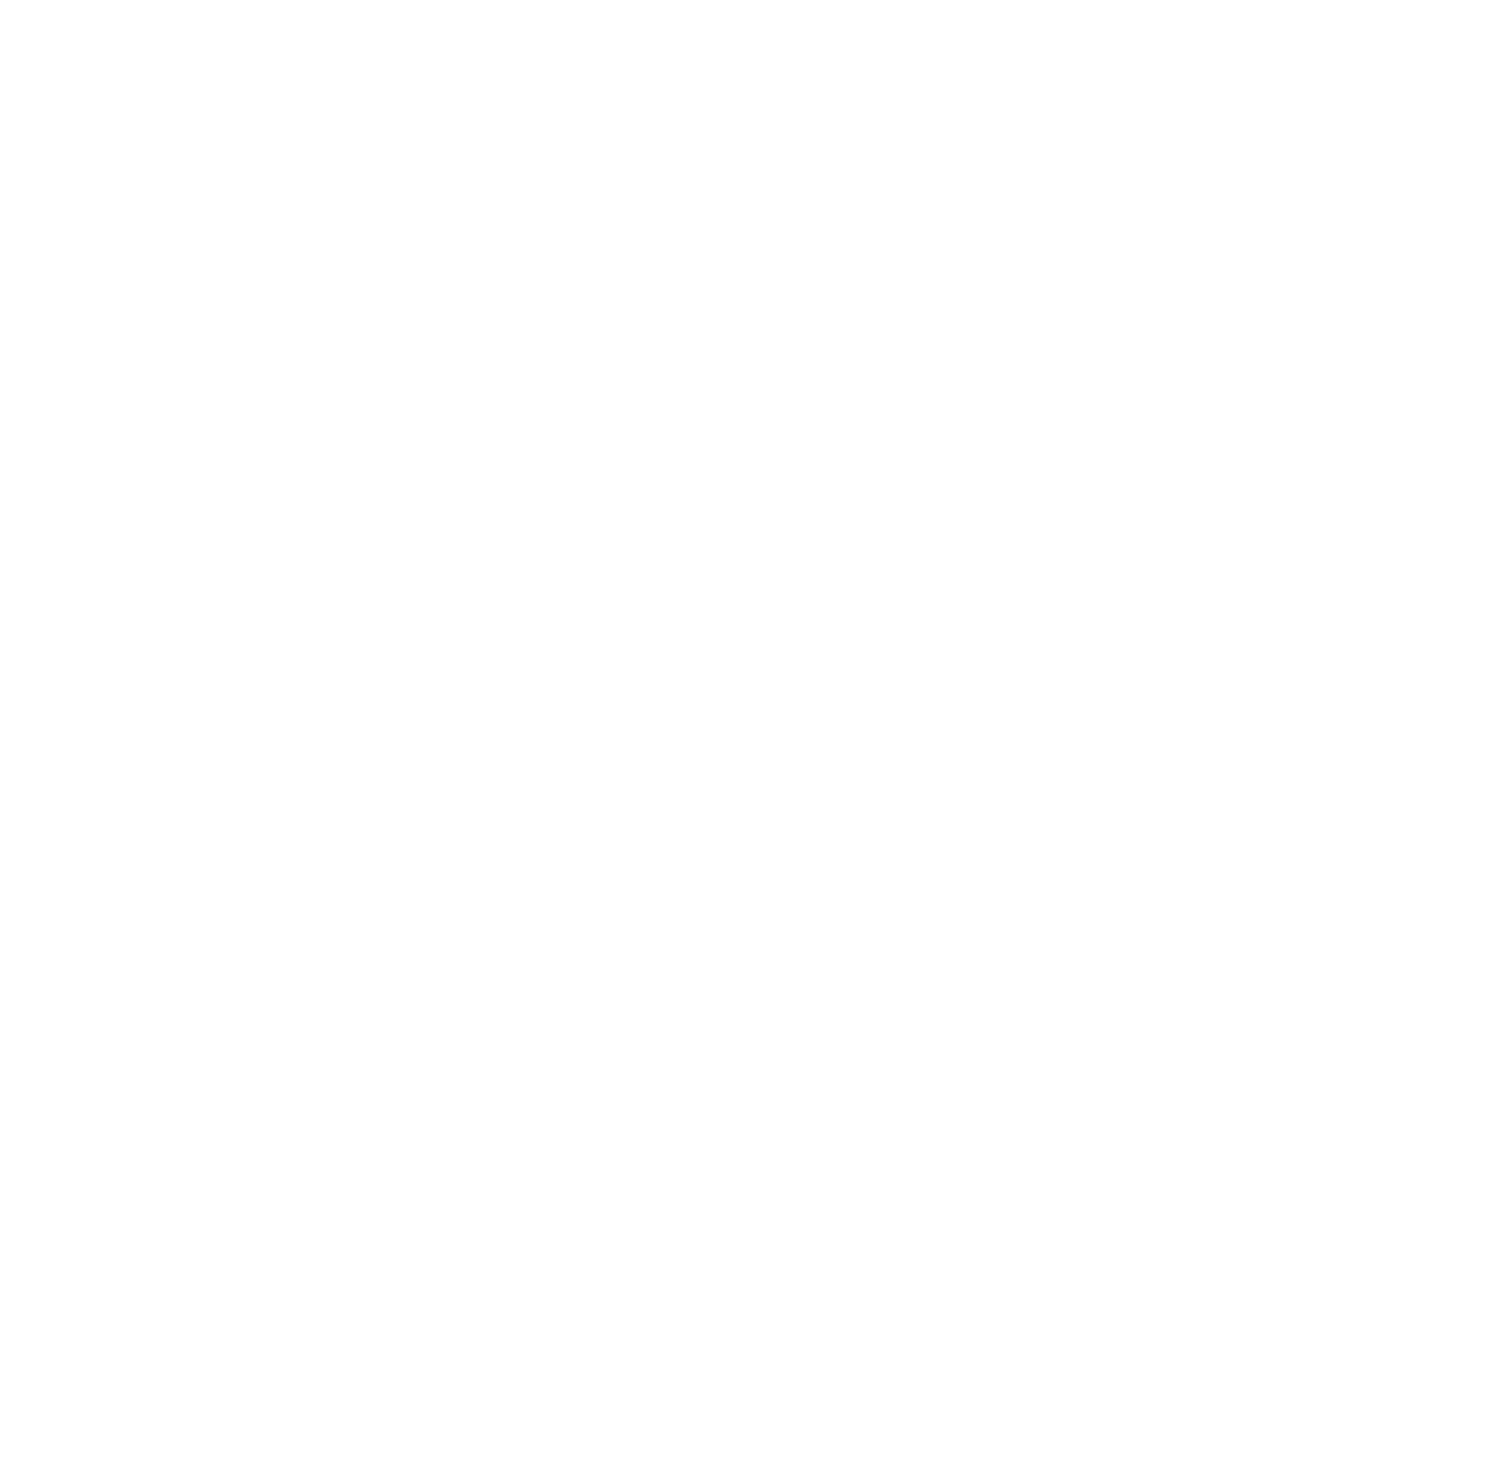 Pilot Corporation logo pour fonds sombres (PNG transparent)